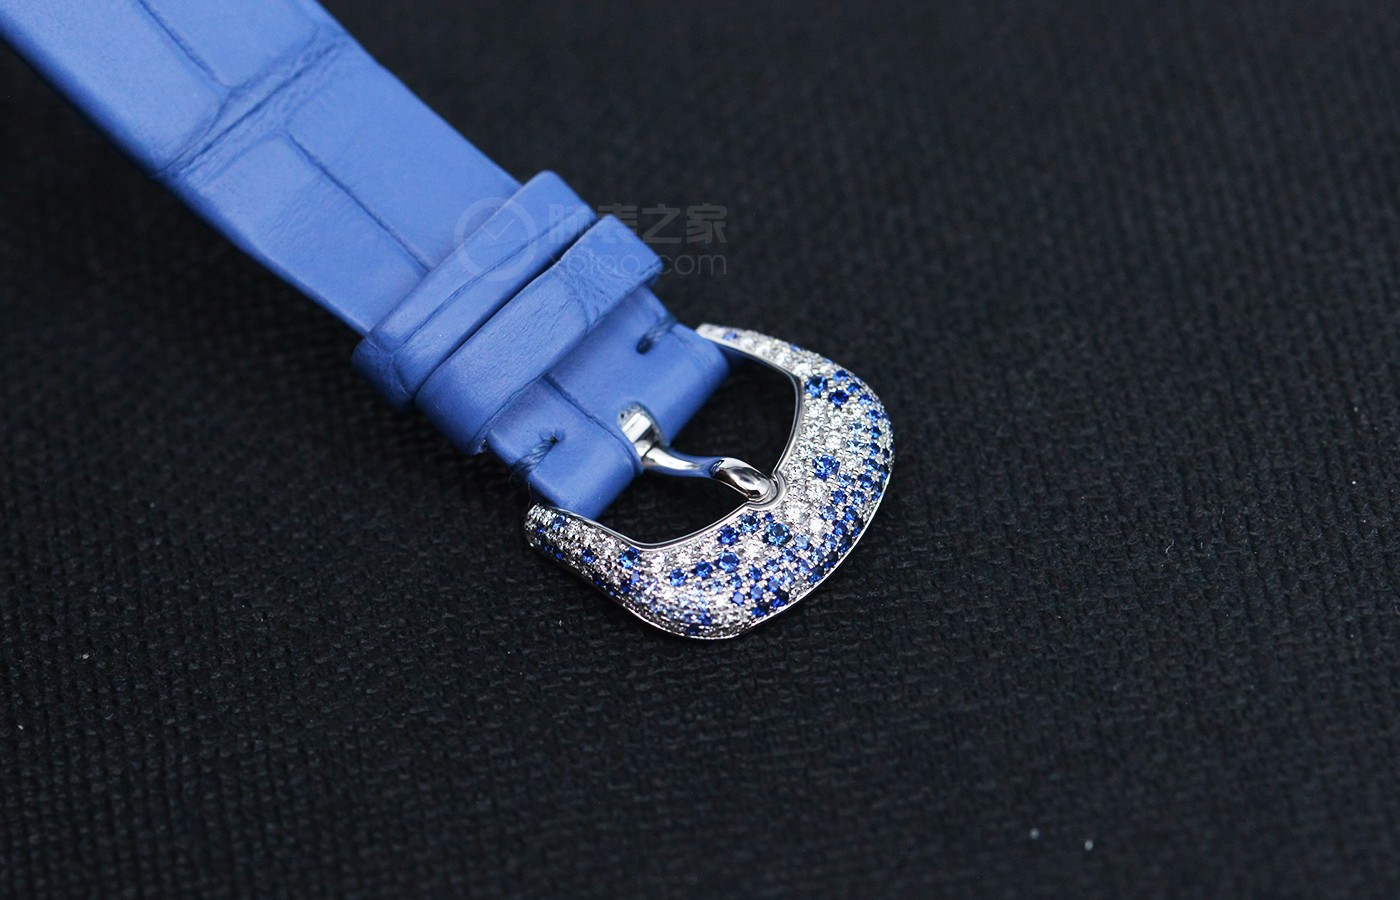 腕表里的蓝色翎毛 品评百达翡丽CALATRAVA系列产品奢华珠宝腕表